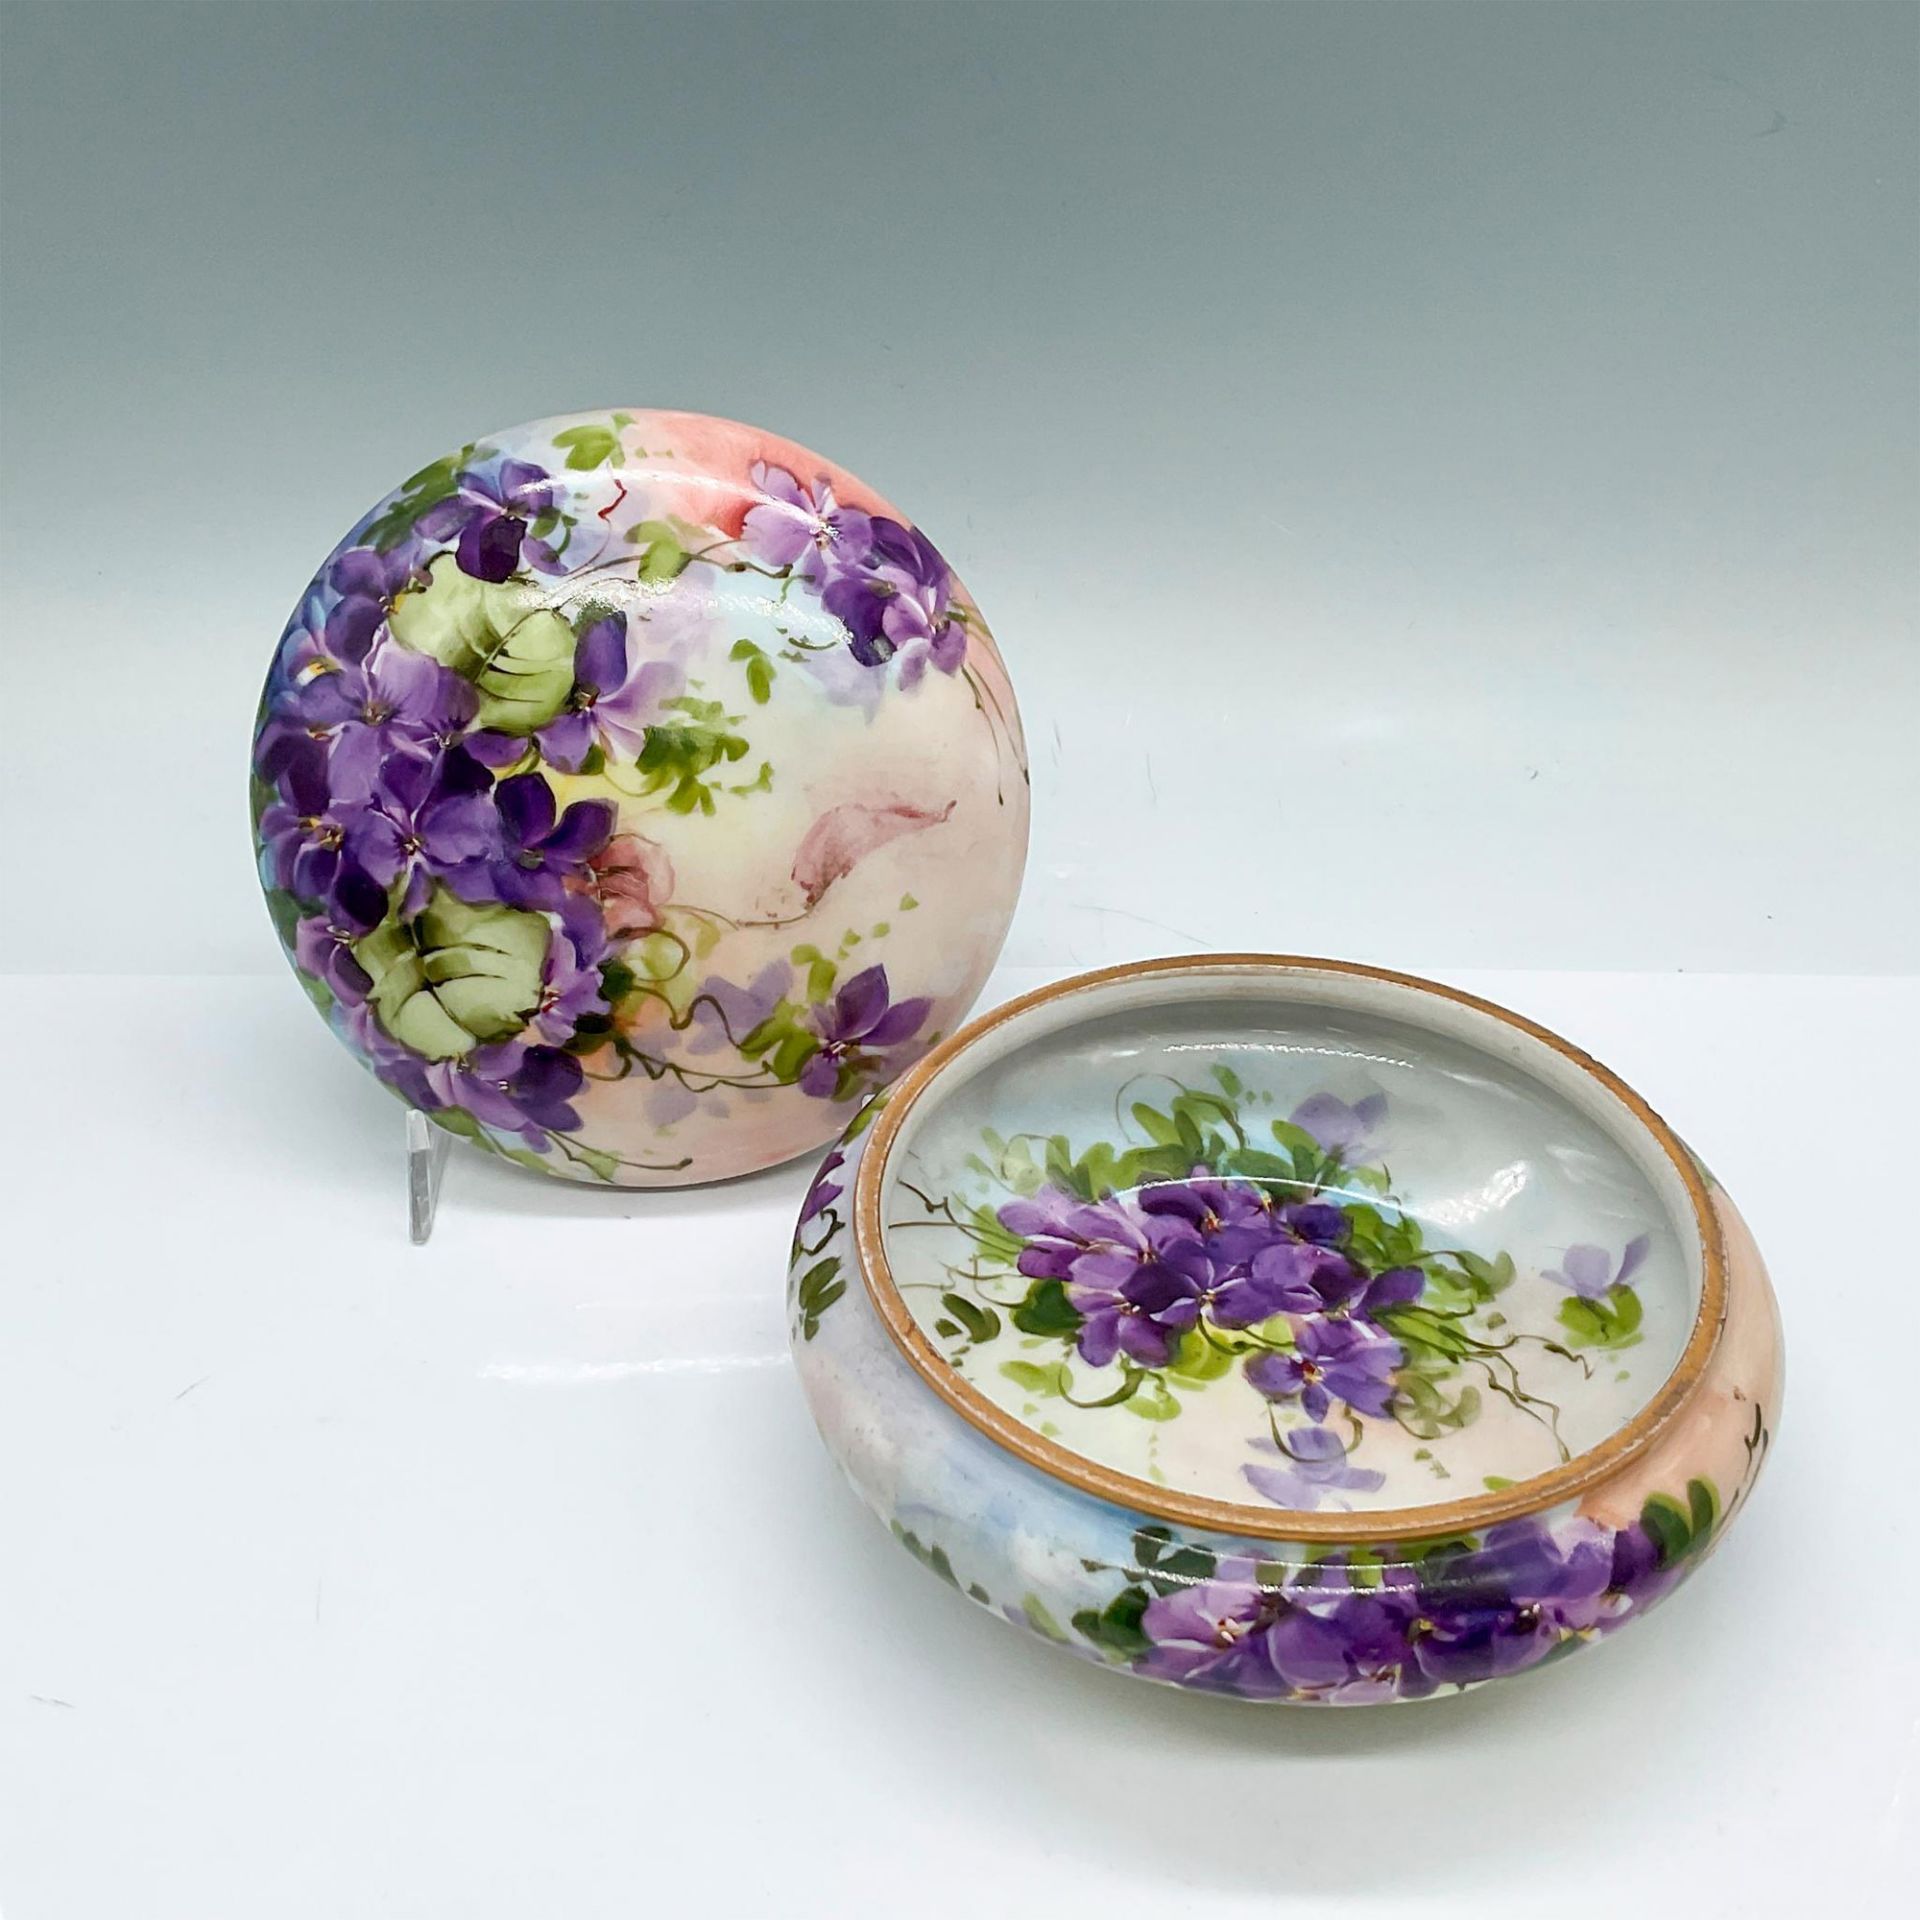 Elite Porcelain Limoges Floral Dresser Box with Cover - Image 2 of 3